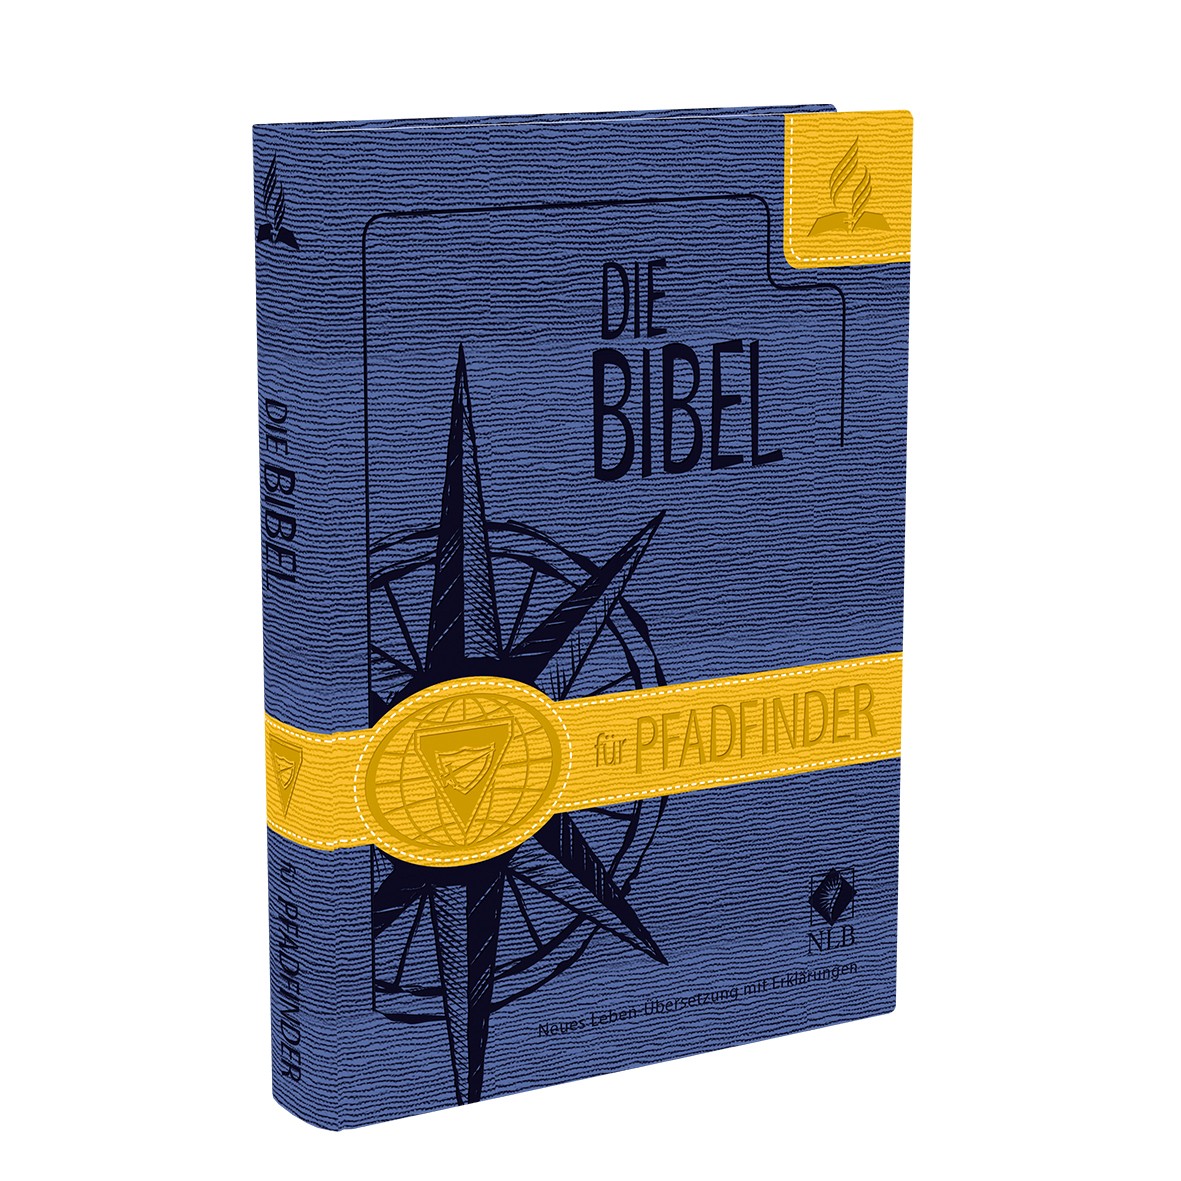 Neues Leben. Die Bibel für Pfadfinder.